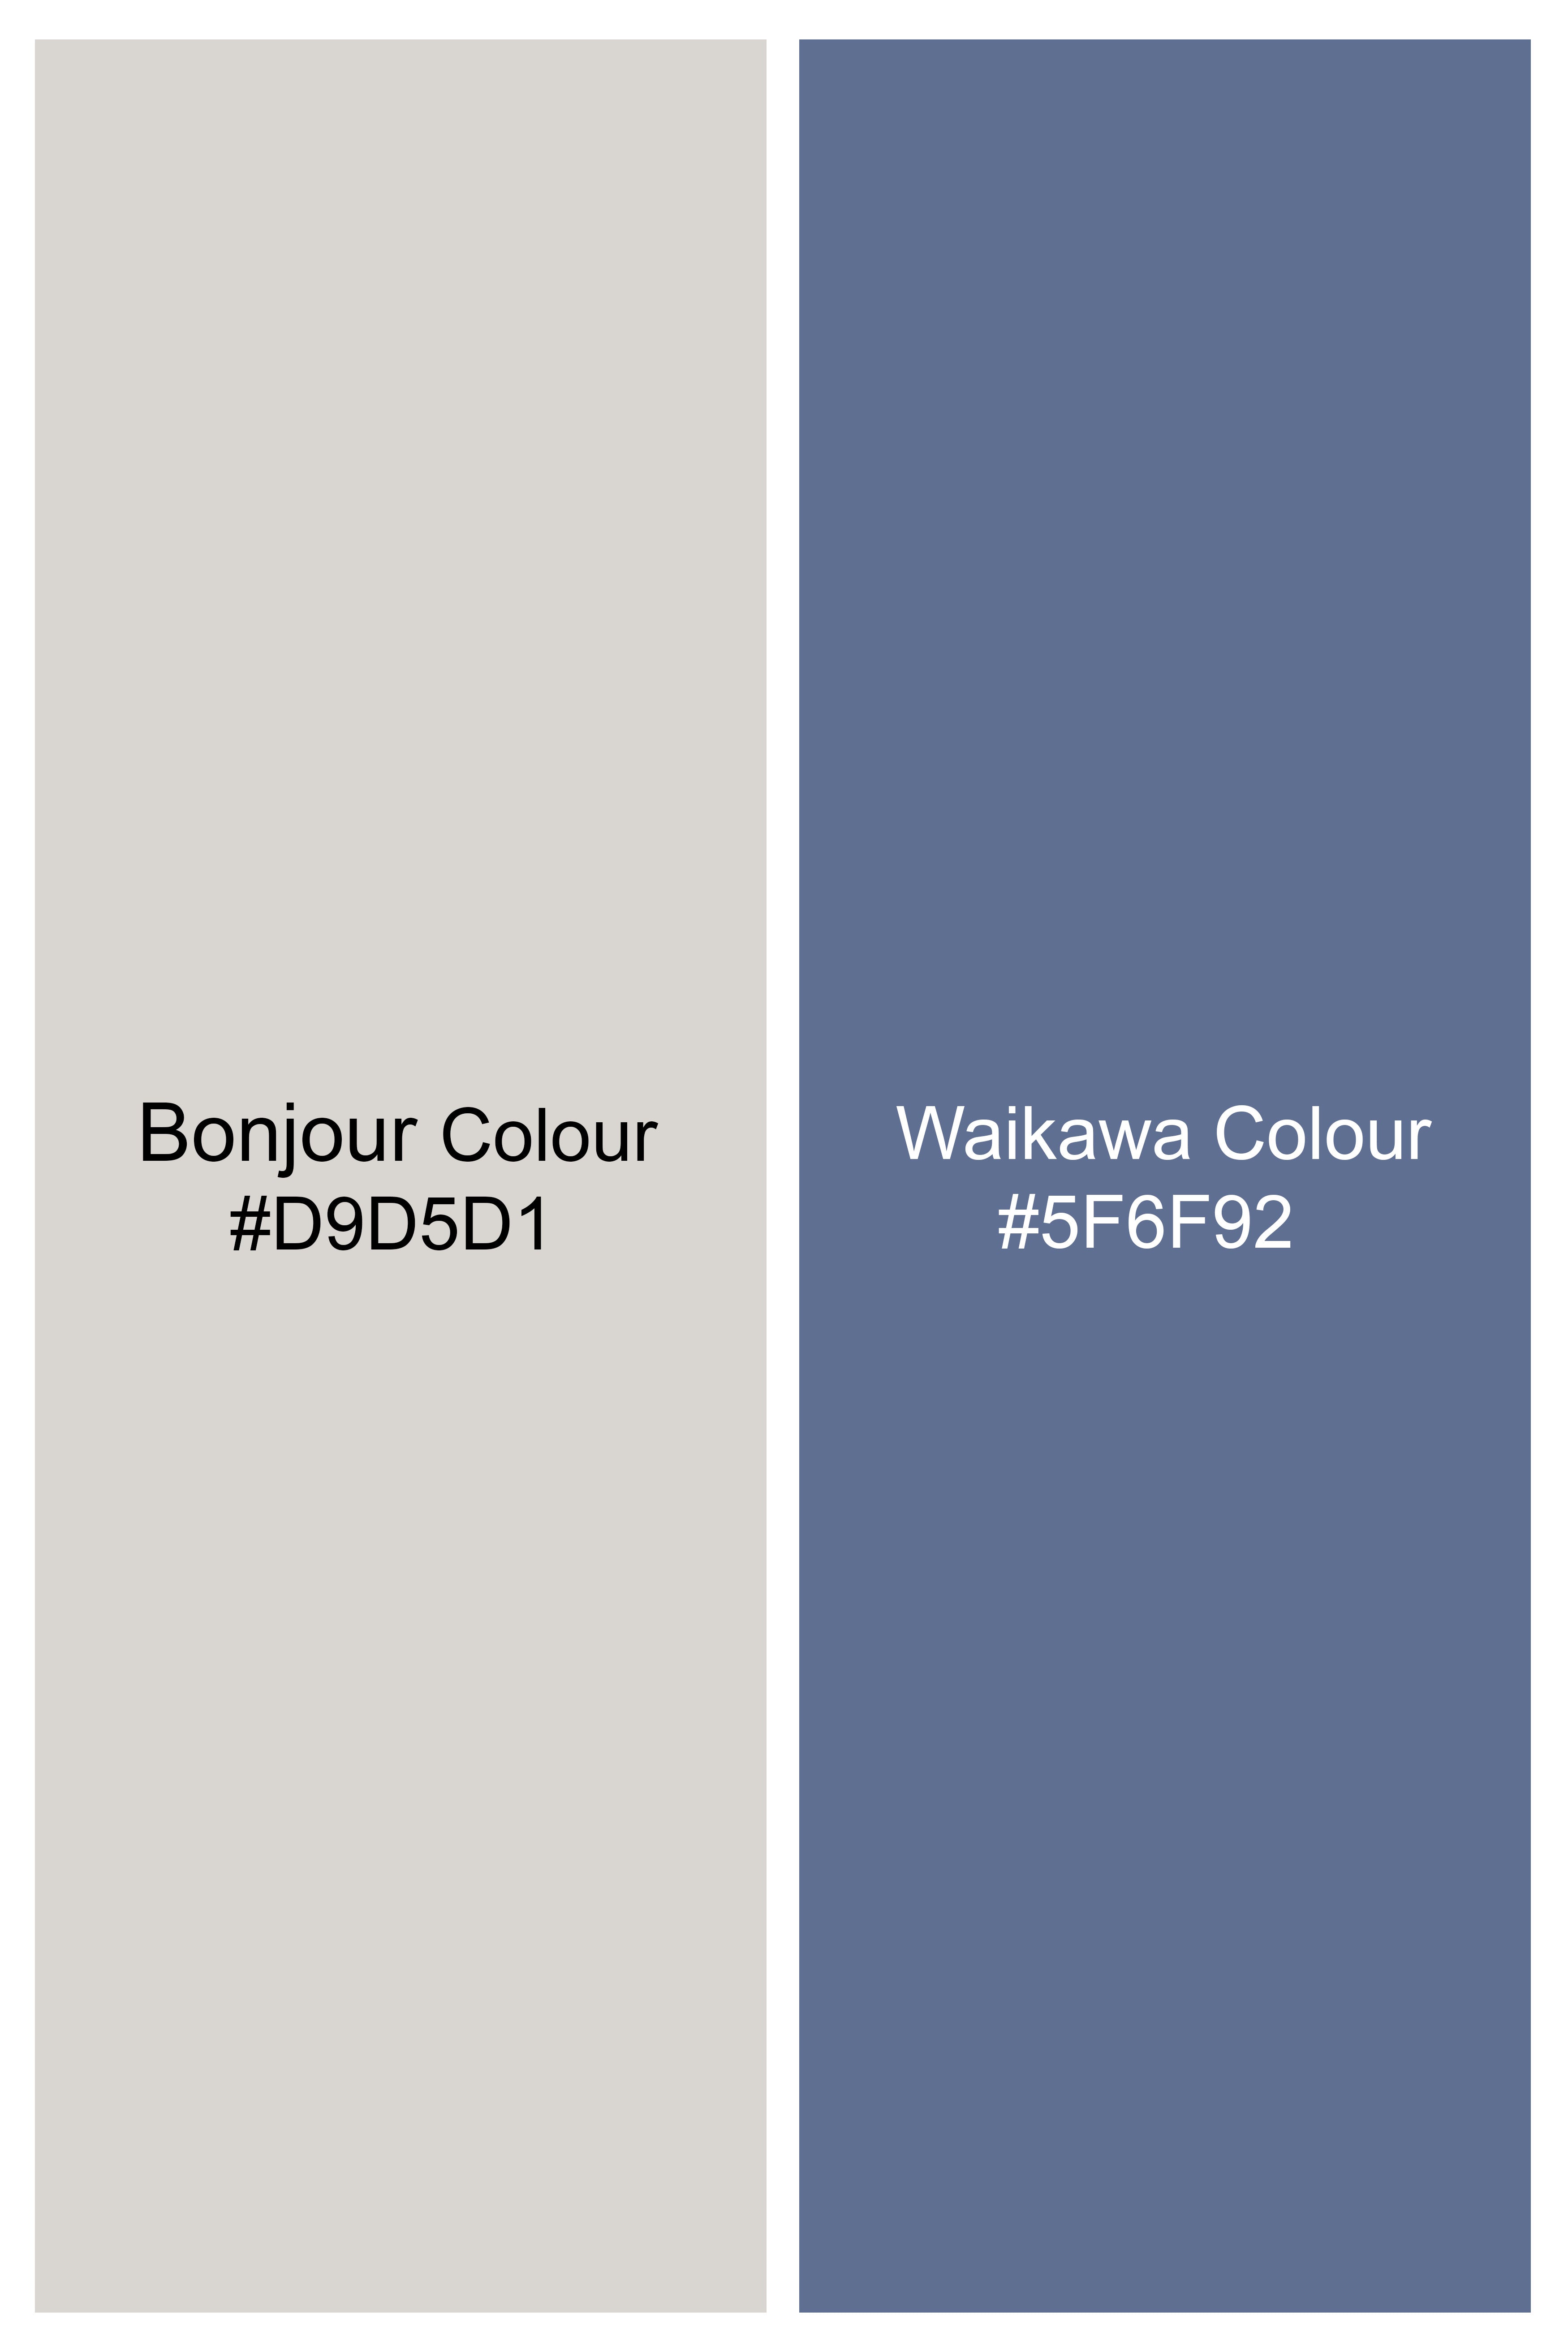 Bonjour Cream and Waikawa Blue Striped Dobby Textured Giza Cotton Shorts SR376-28, SR376-30, SR376-32, SR376-34, SR376-36, SR376-38, SR376-40, SR376-42, SR376-44